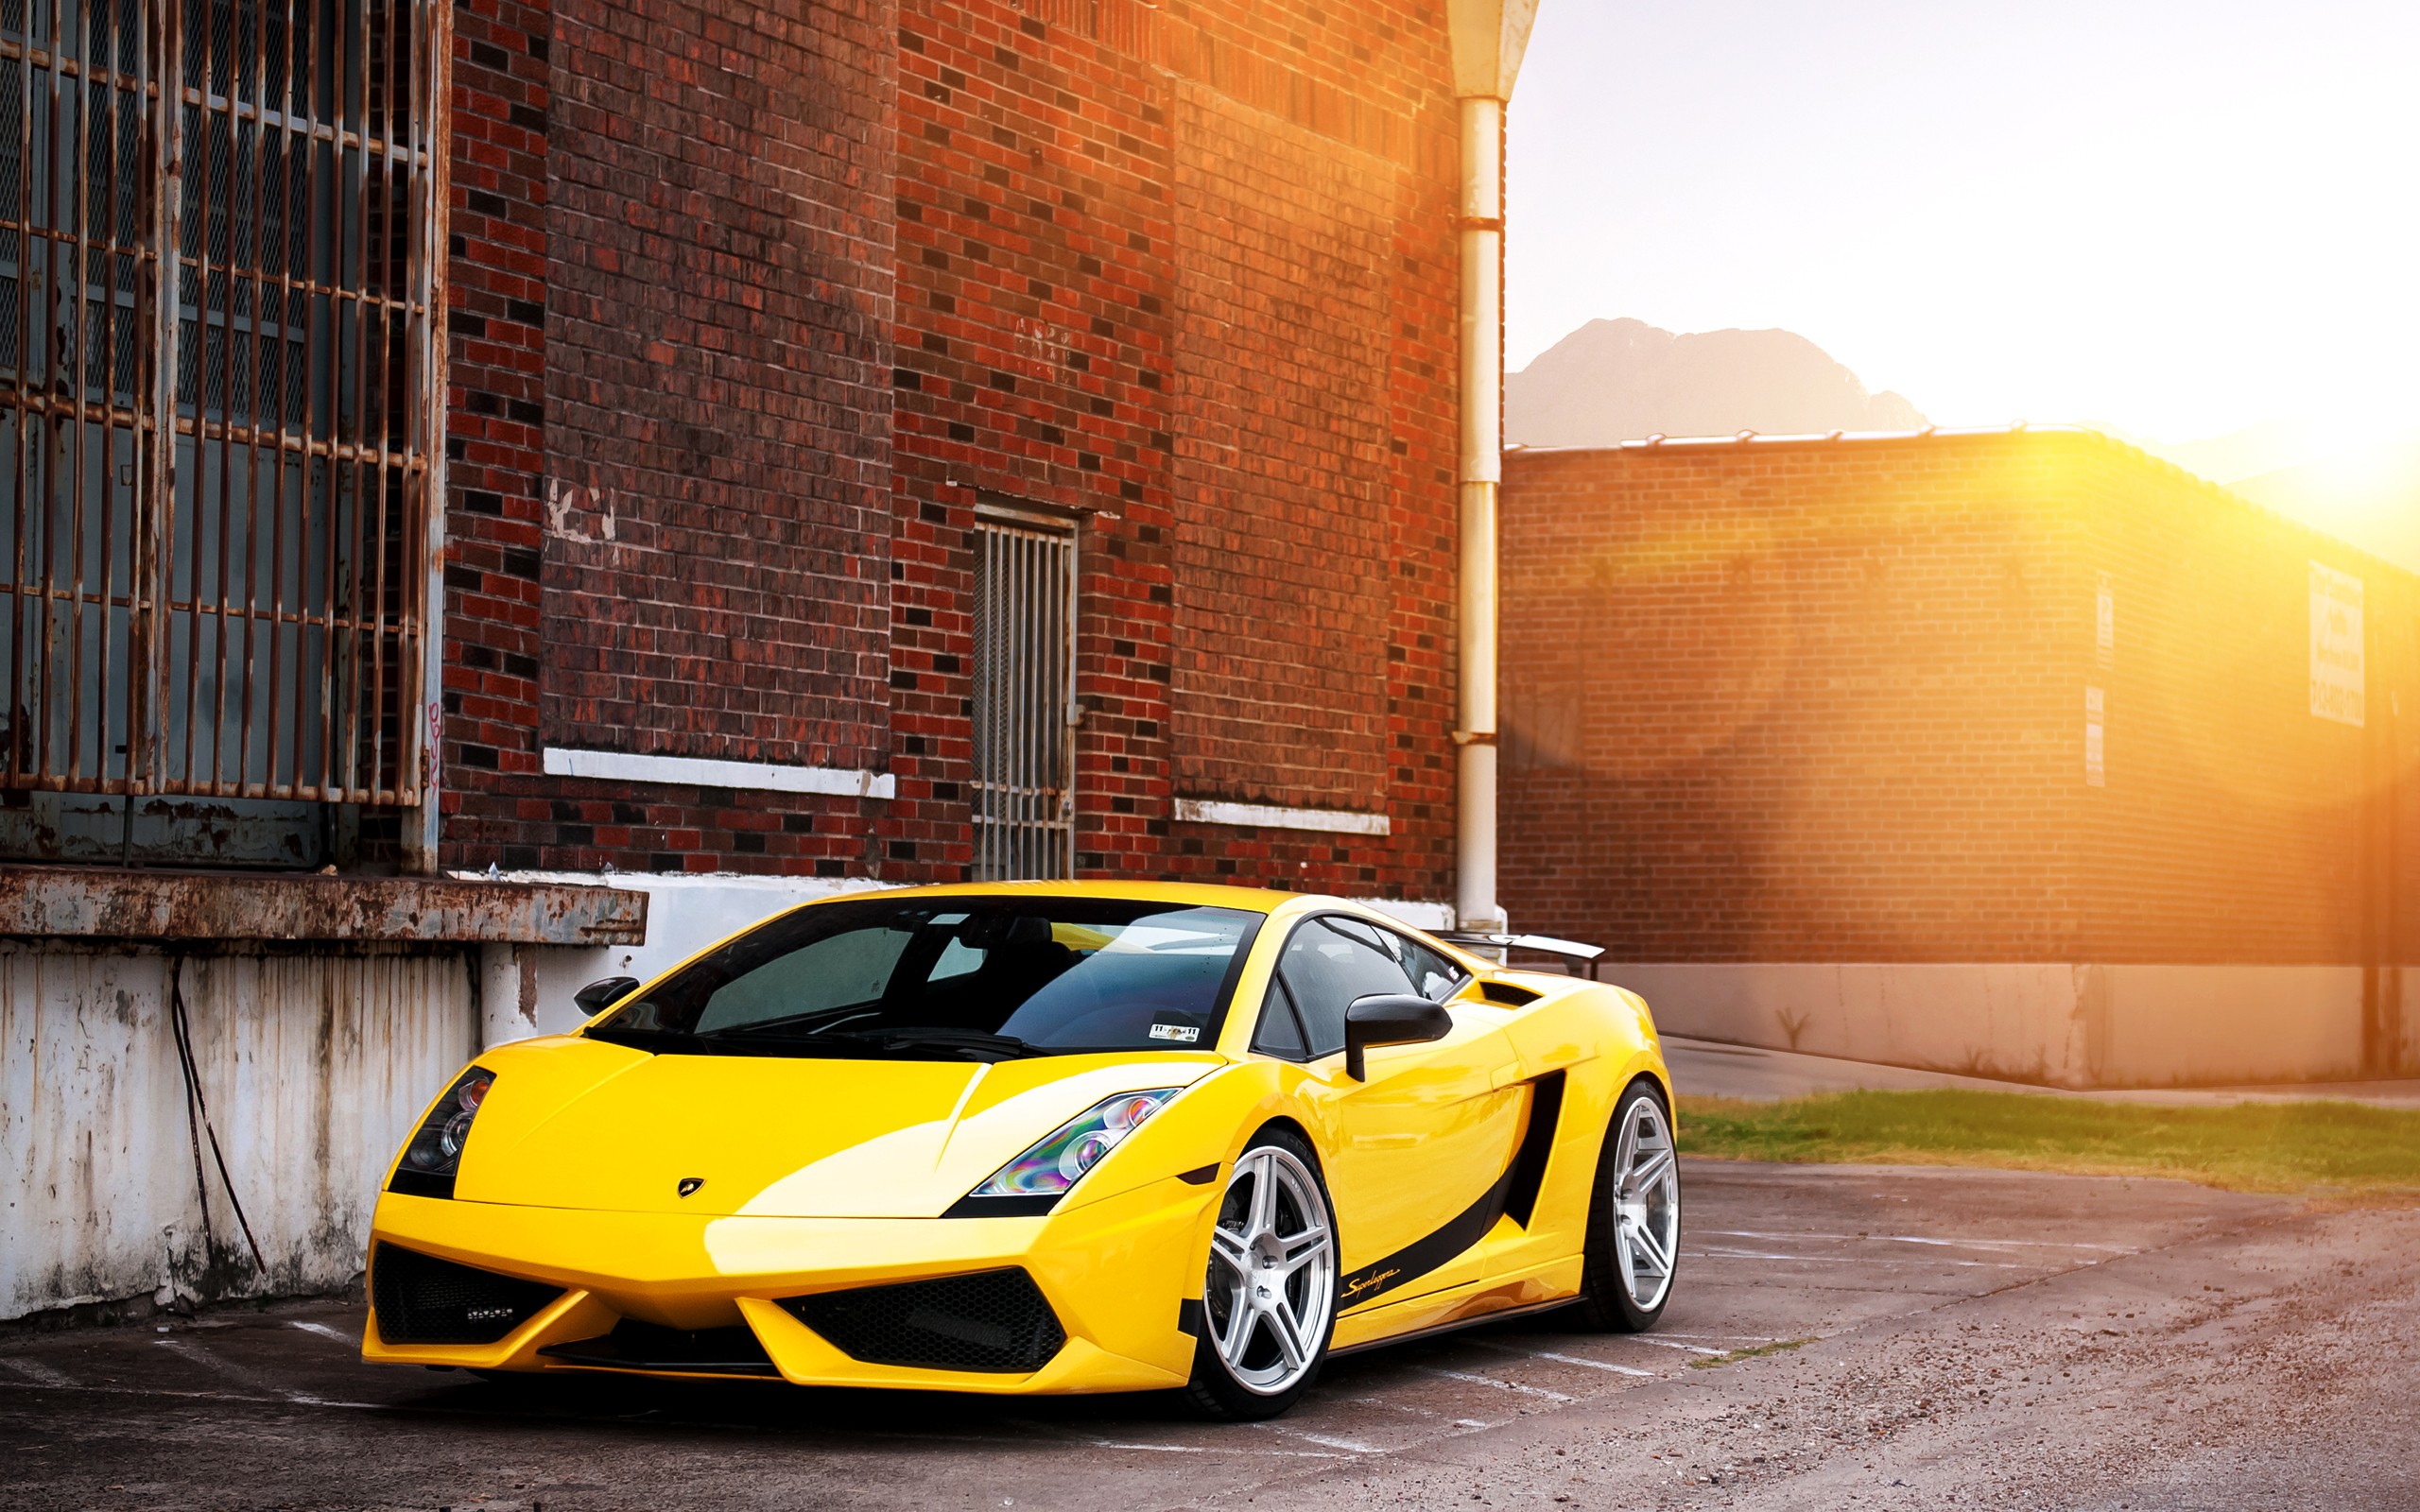 Lamborghini Gallardo Wallpaper 1080p 6yk36ju Wallpaperexpert